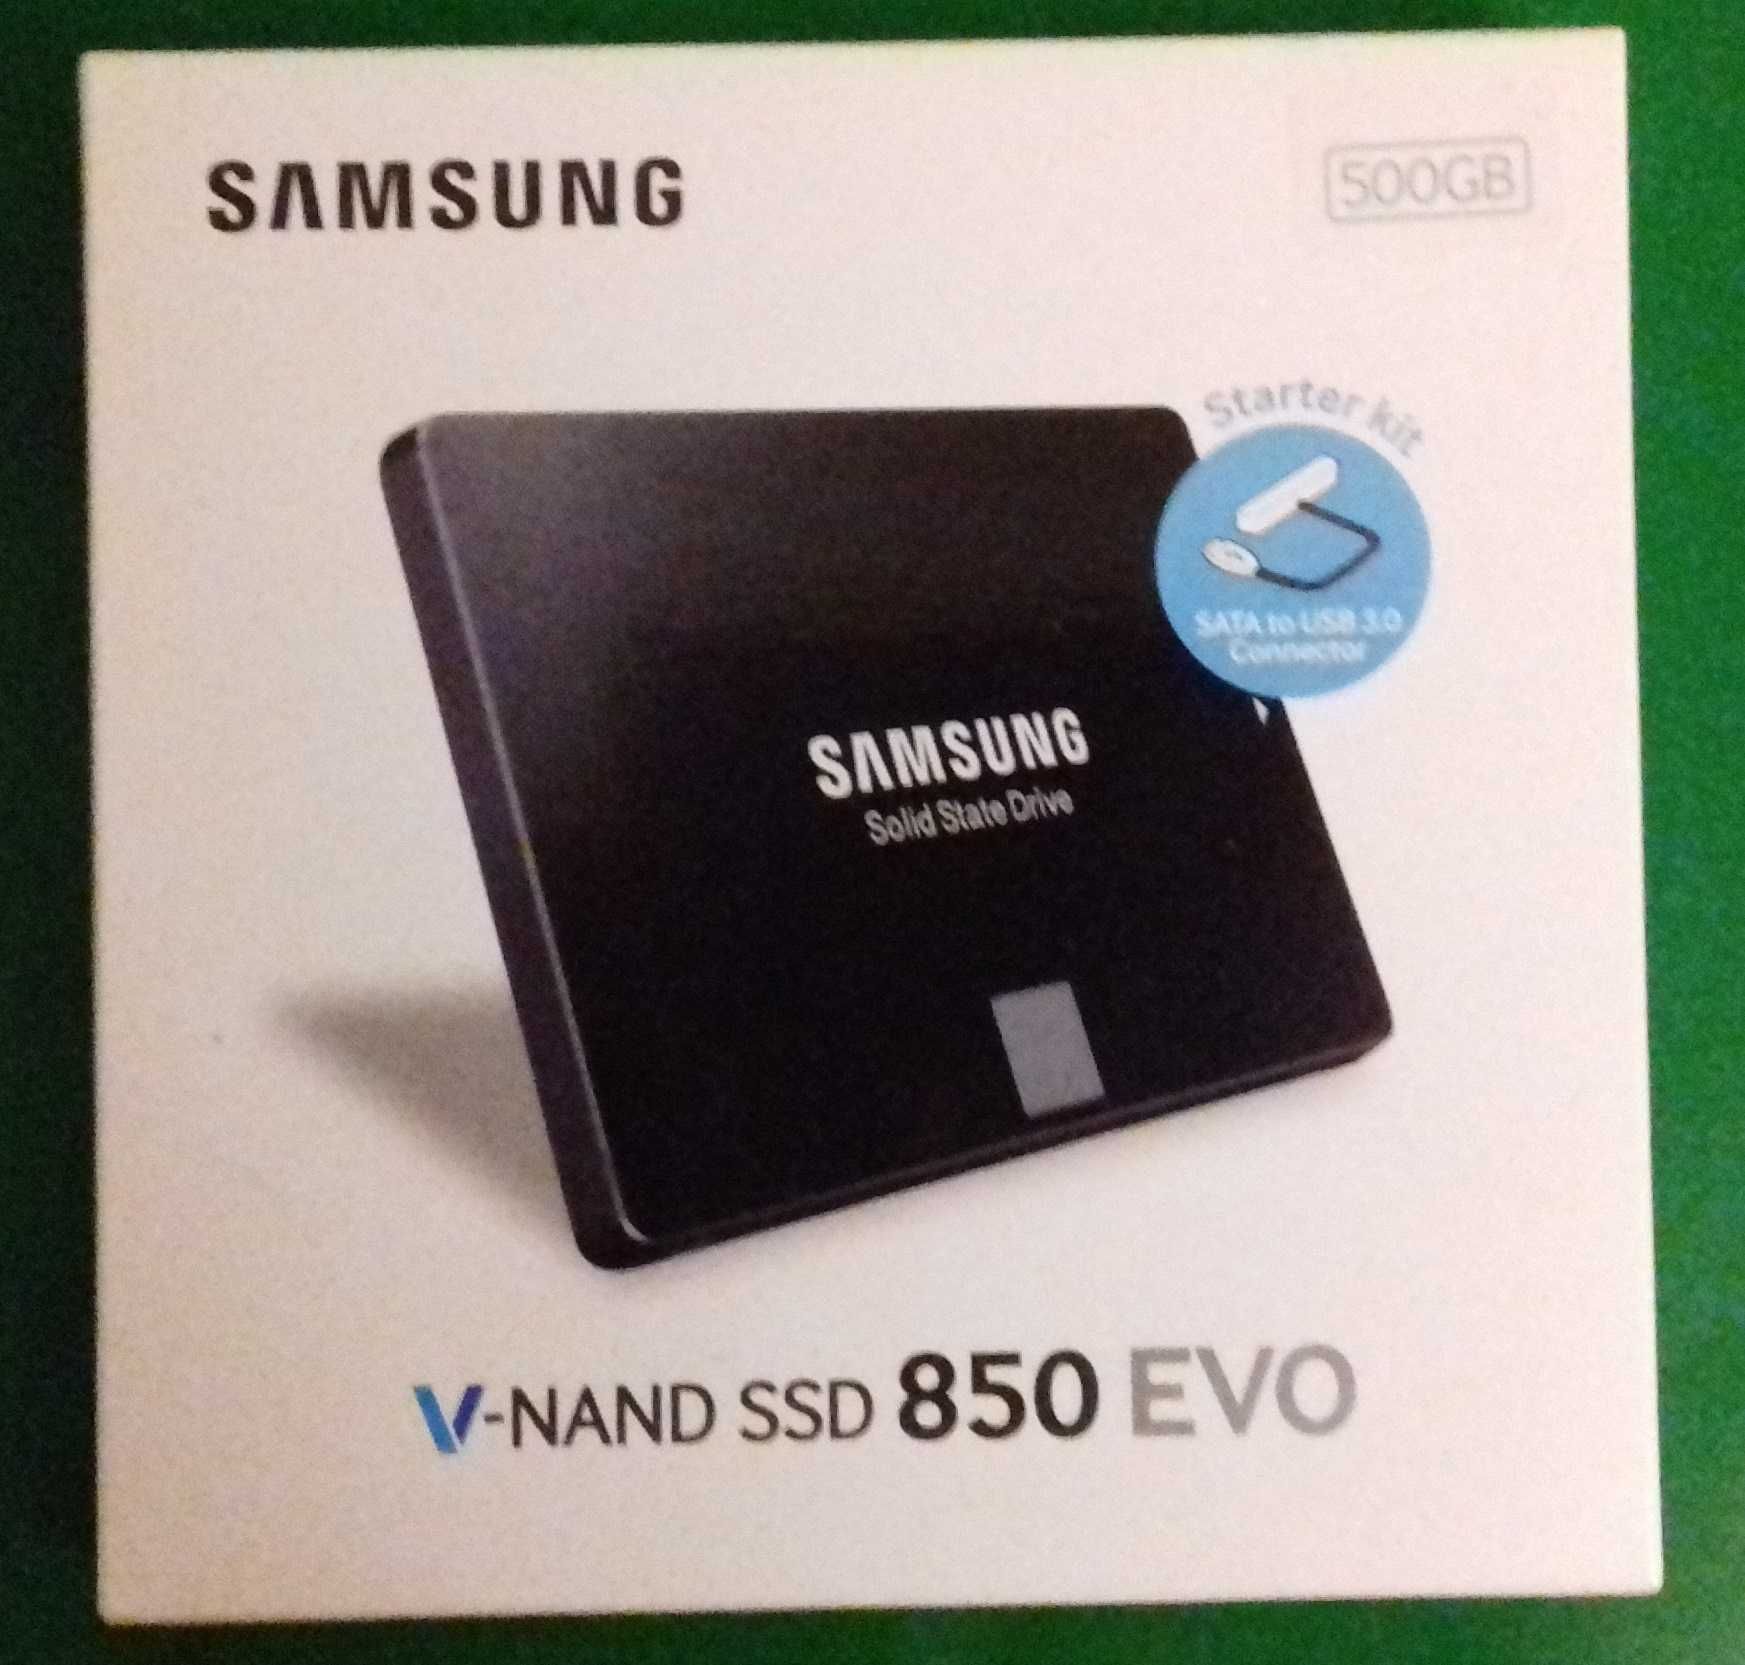 Samsung-jeden z lepszych na rynku-860EVO-1TB-dysk ssd.Inne modele foto